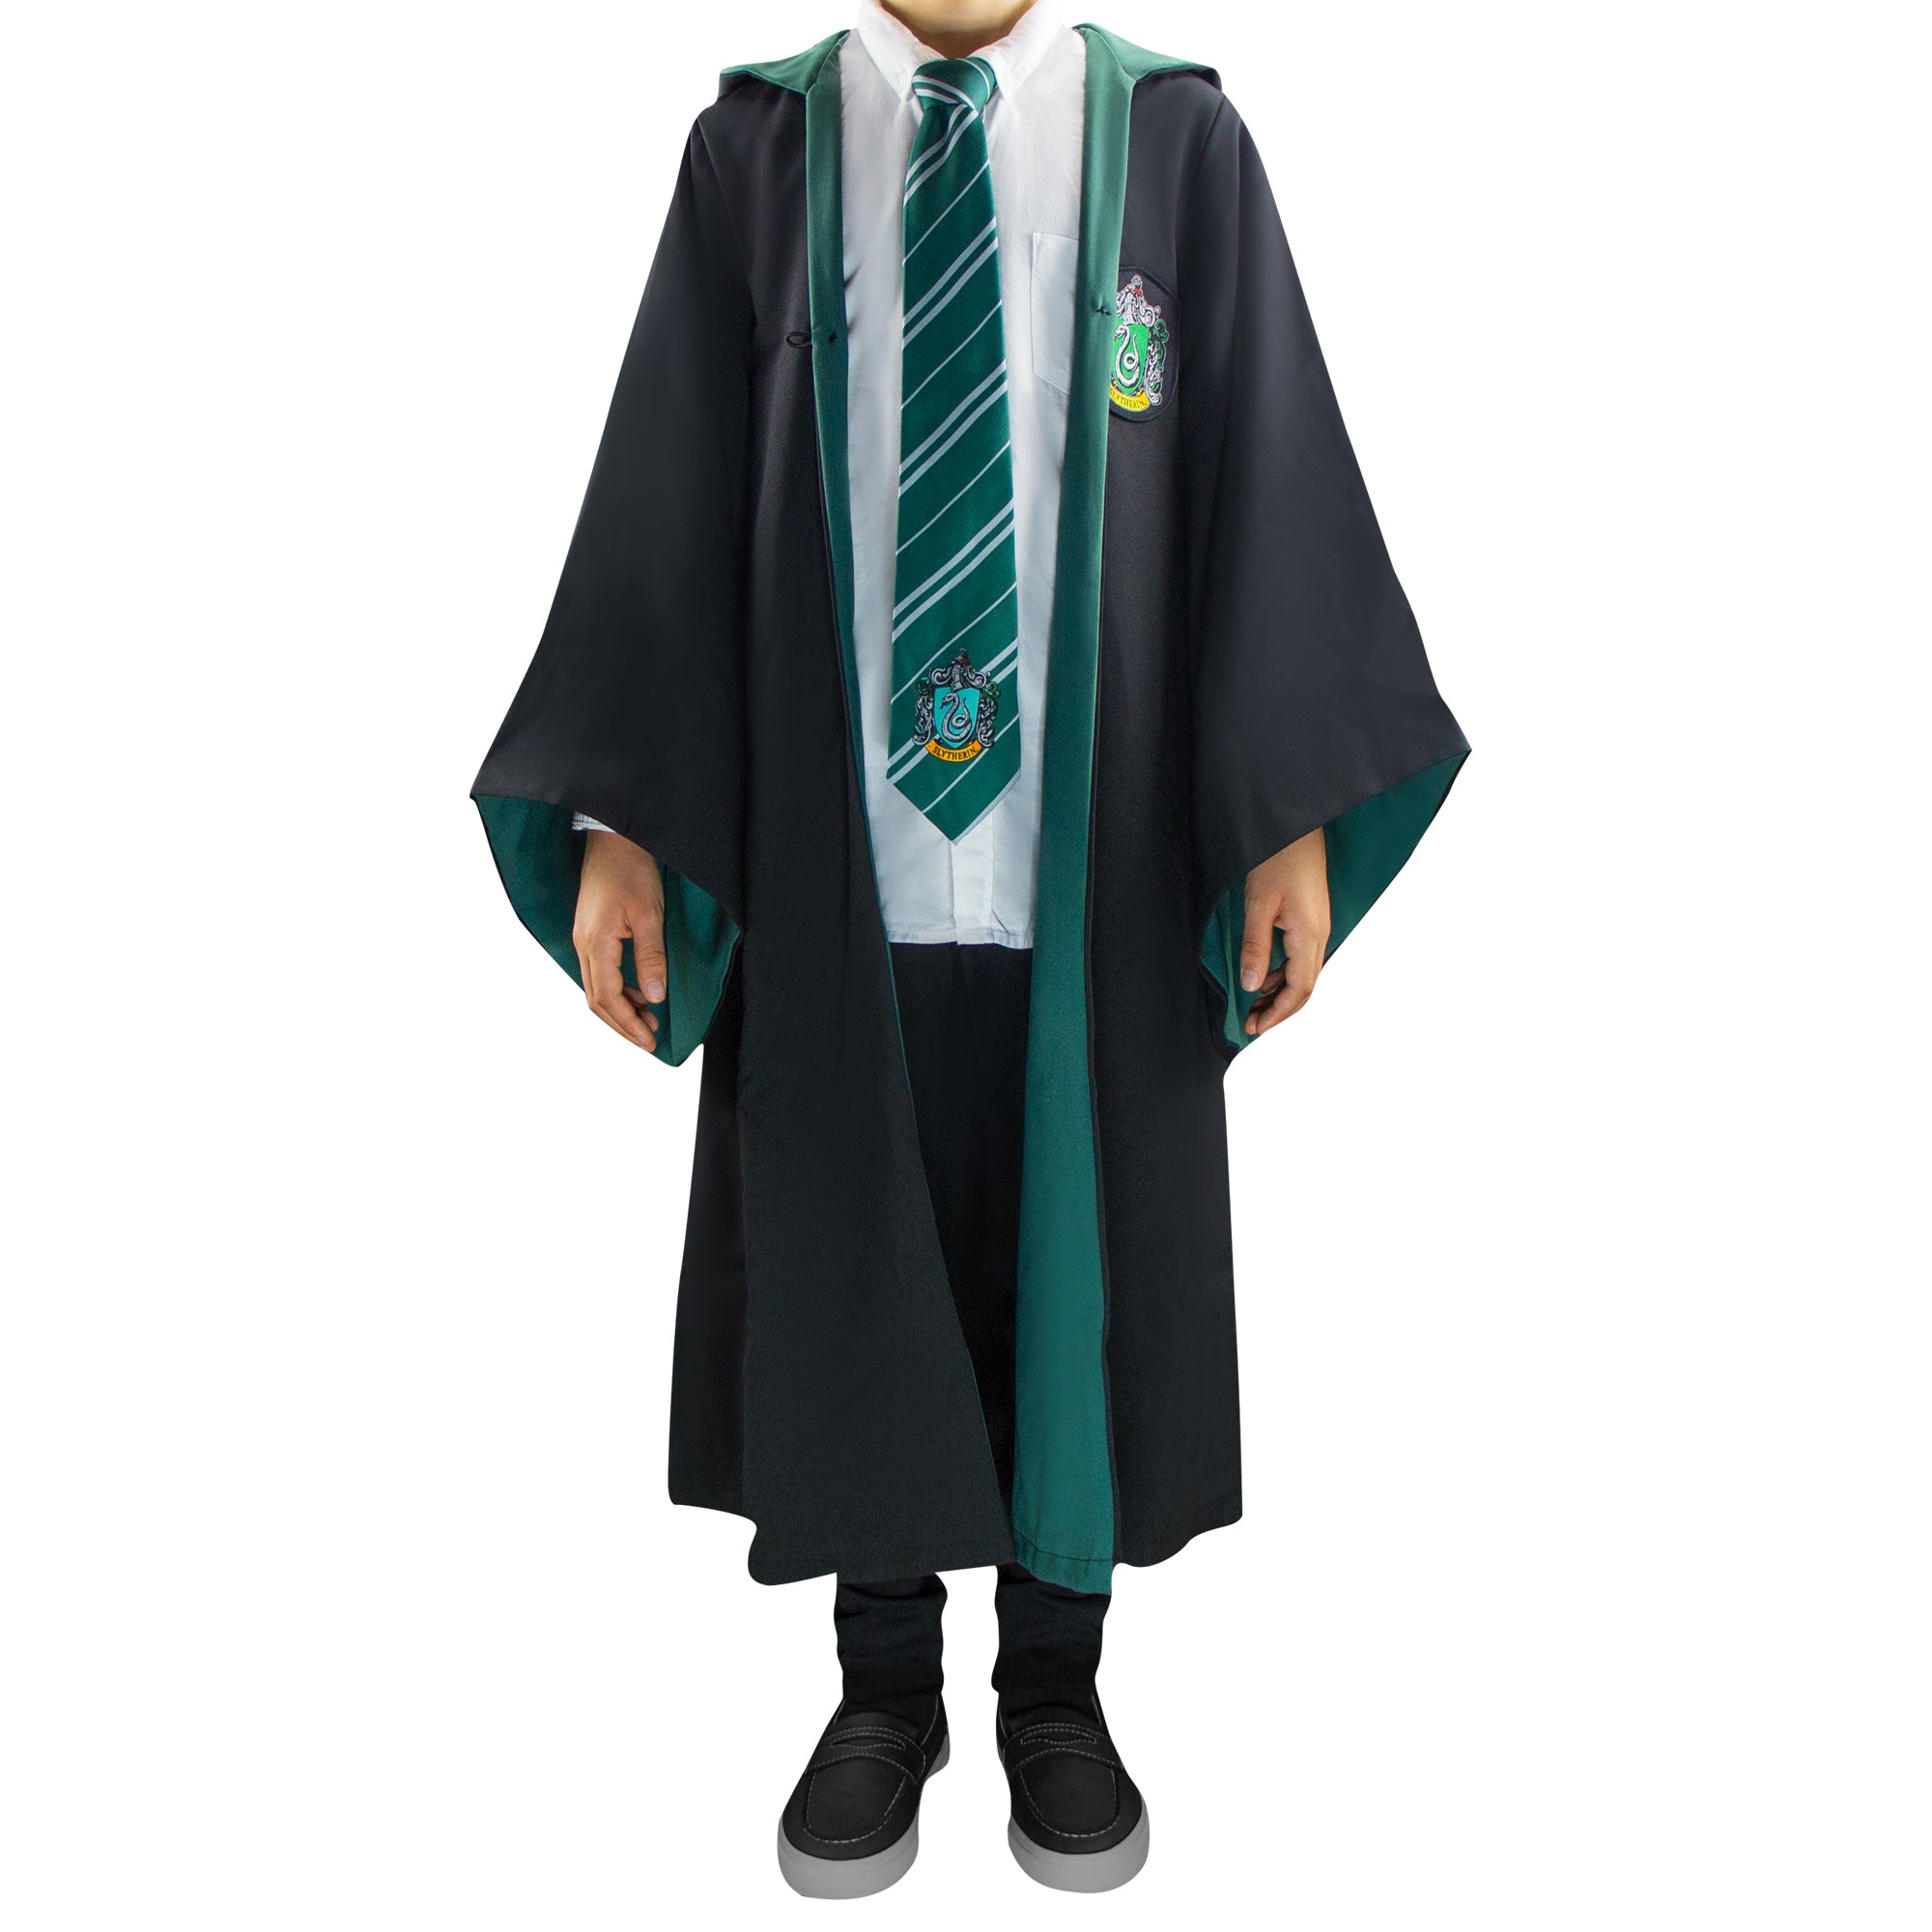 Disfraz de Estudiante de Slytherin de Harry Potter para niño